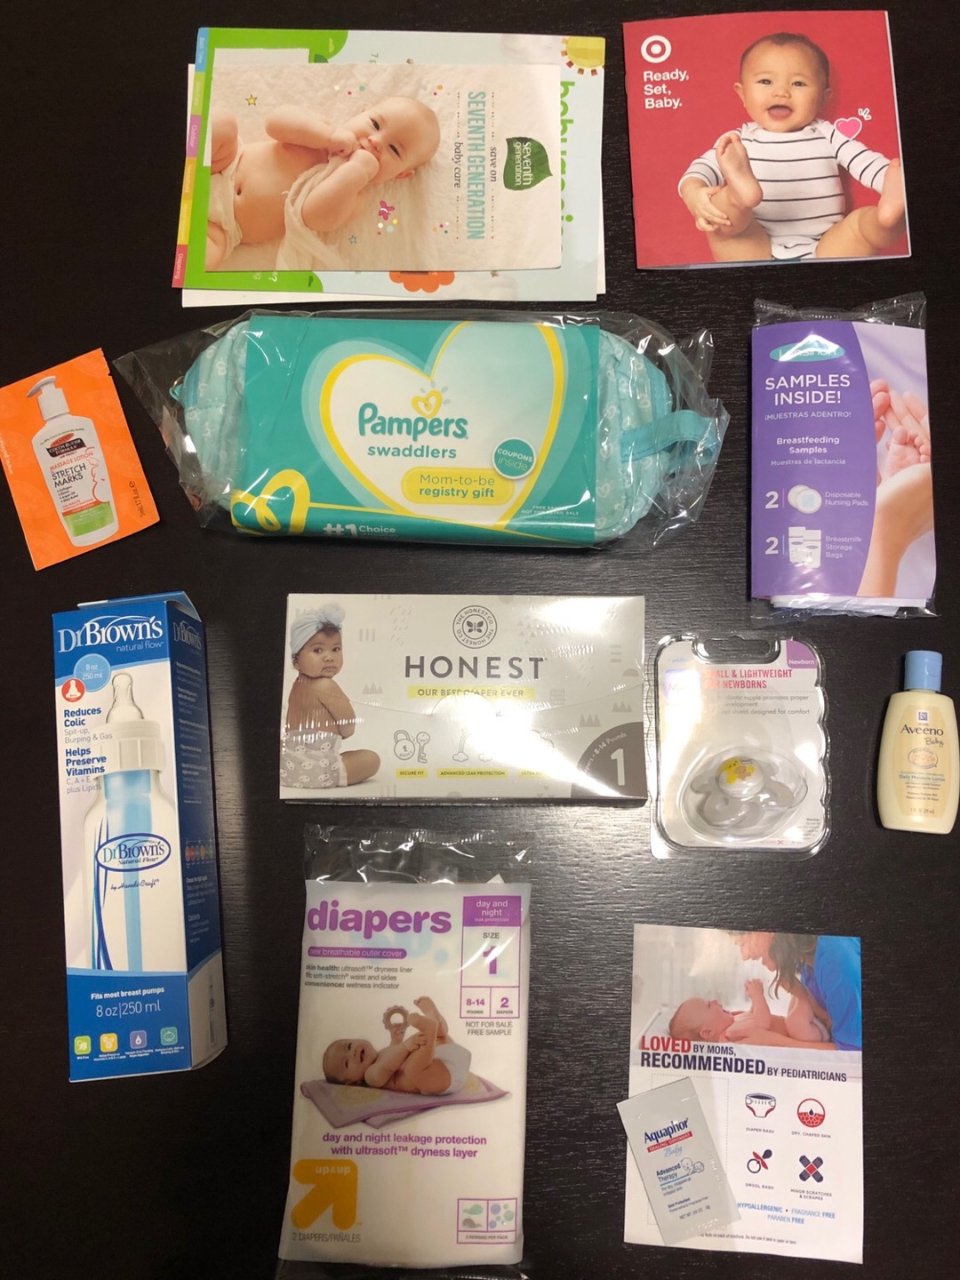 奶瓶,奶嘴,宝宝浴衣,尿布,襁褓,宝宝油,妊娠纹,防溢乳垫